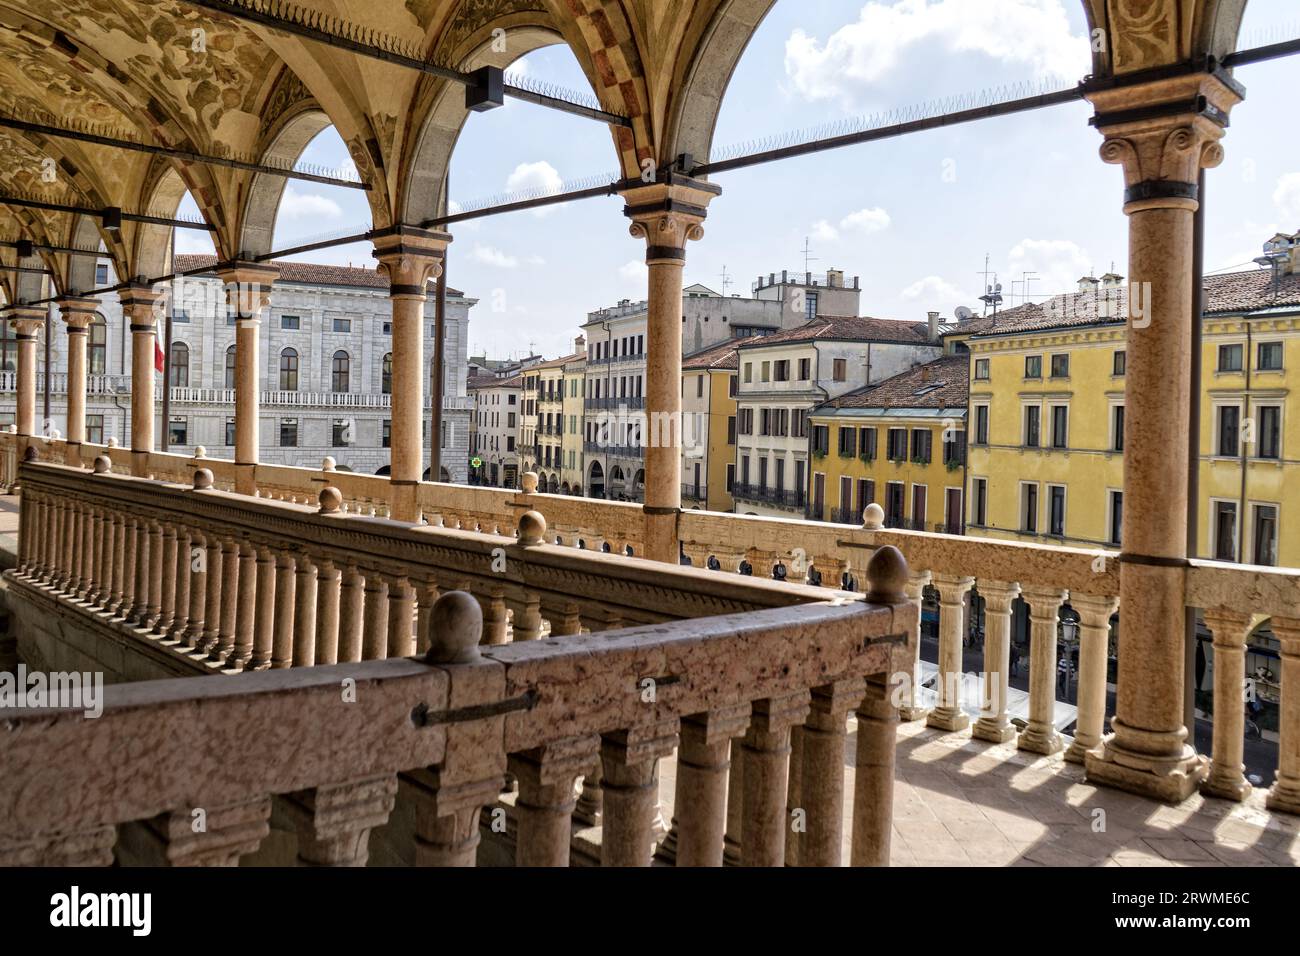 Panoramaaussicht auf die Terrasse des Palastes der Vernunft, Sala della Ragione, wo die Angeklagten in der Antike verurteilt wurden, und die Dächer von t Stockfoto